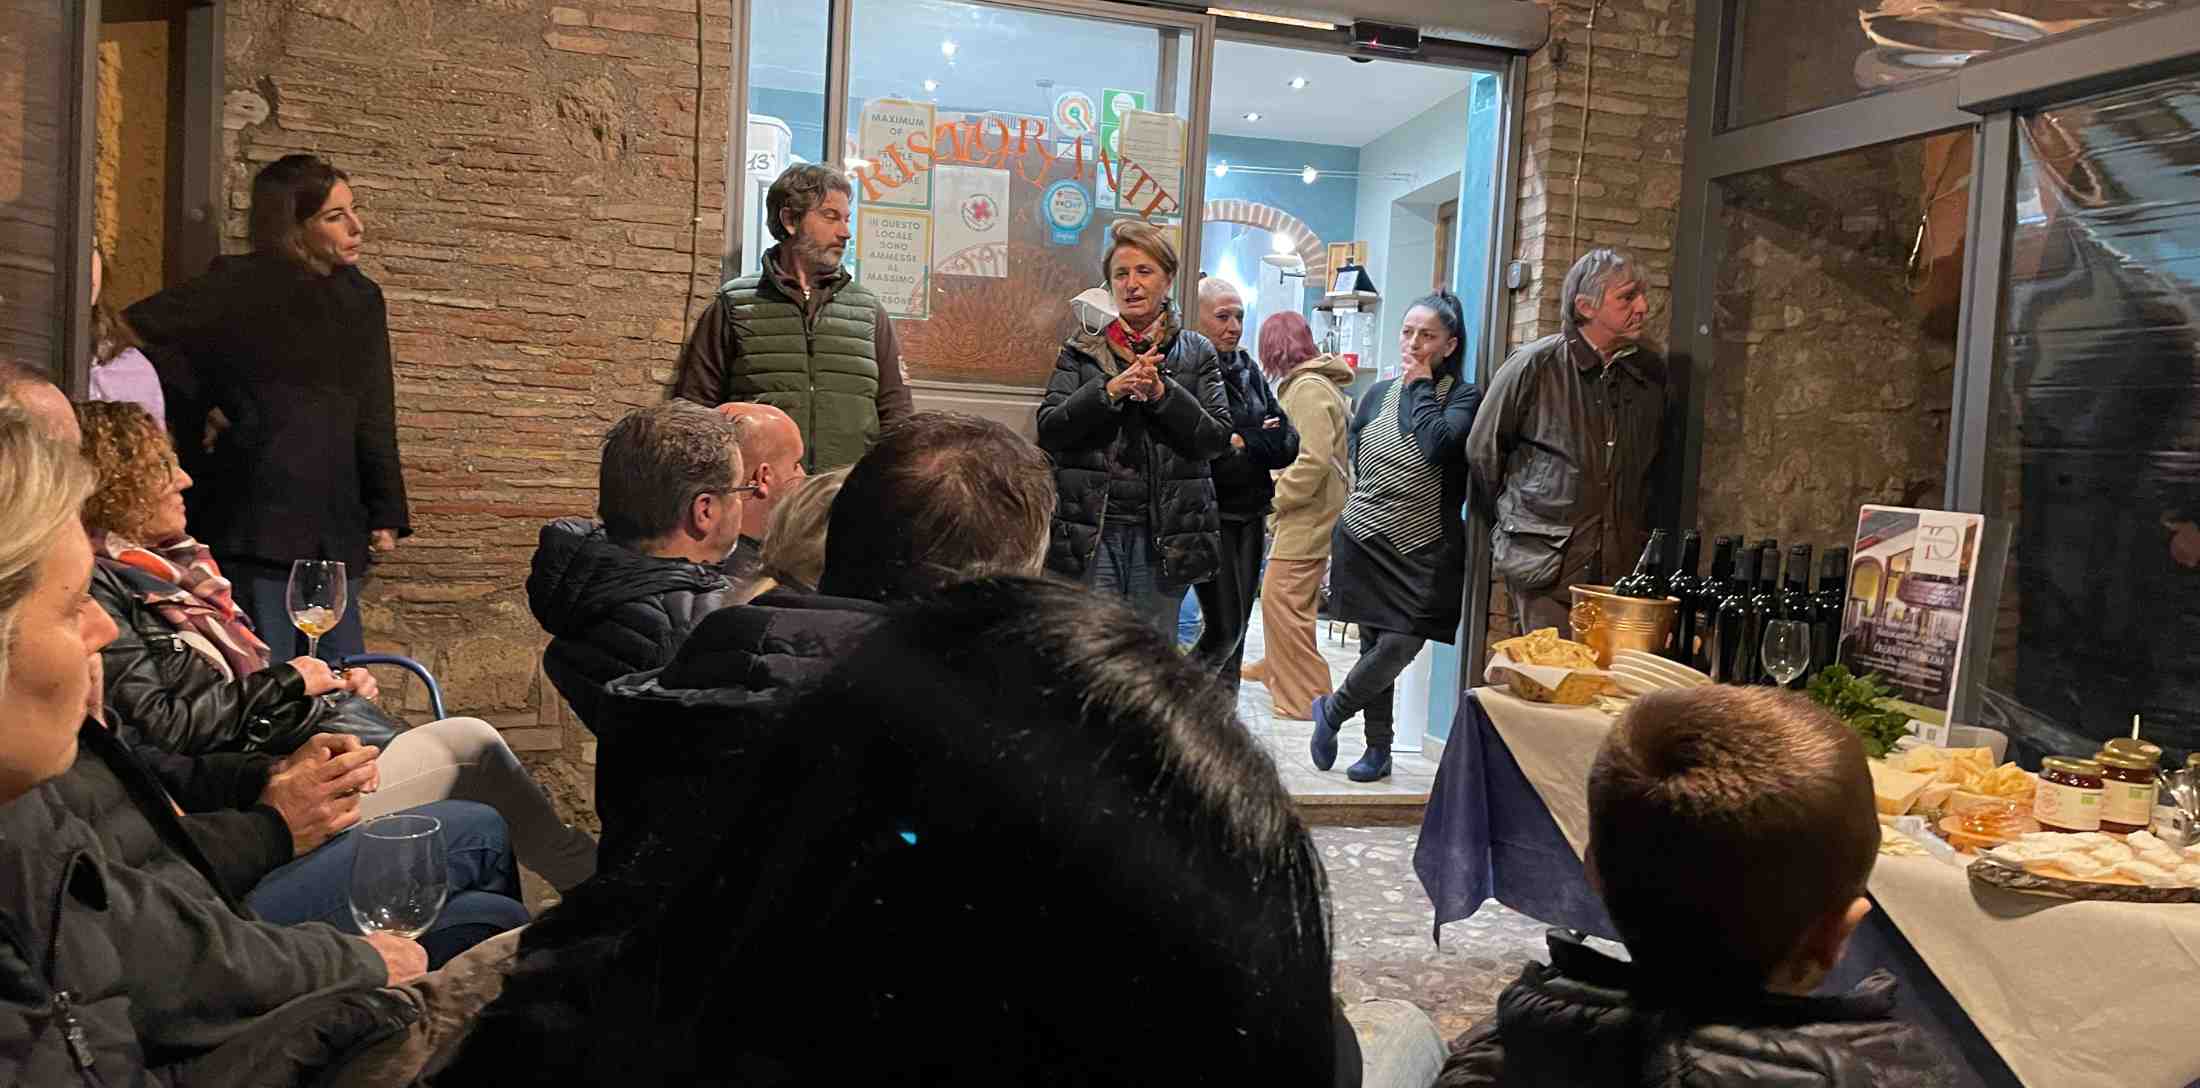 Presentazione della Cantina La Madaleine durante l'evento Degusta Otricoli